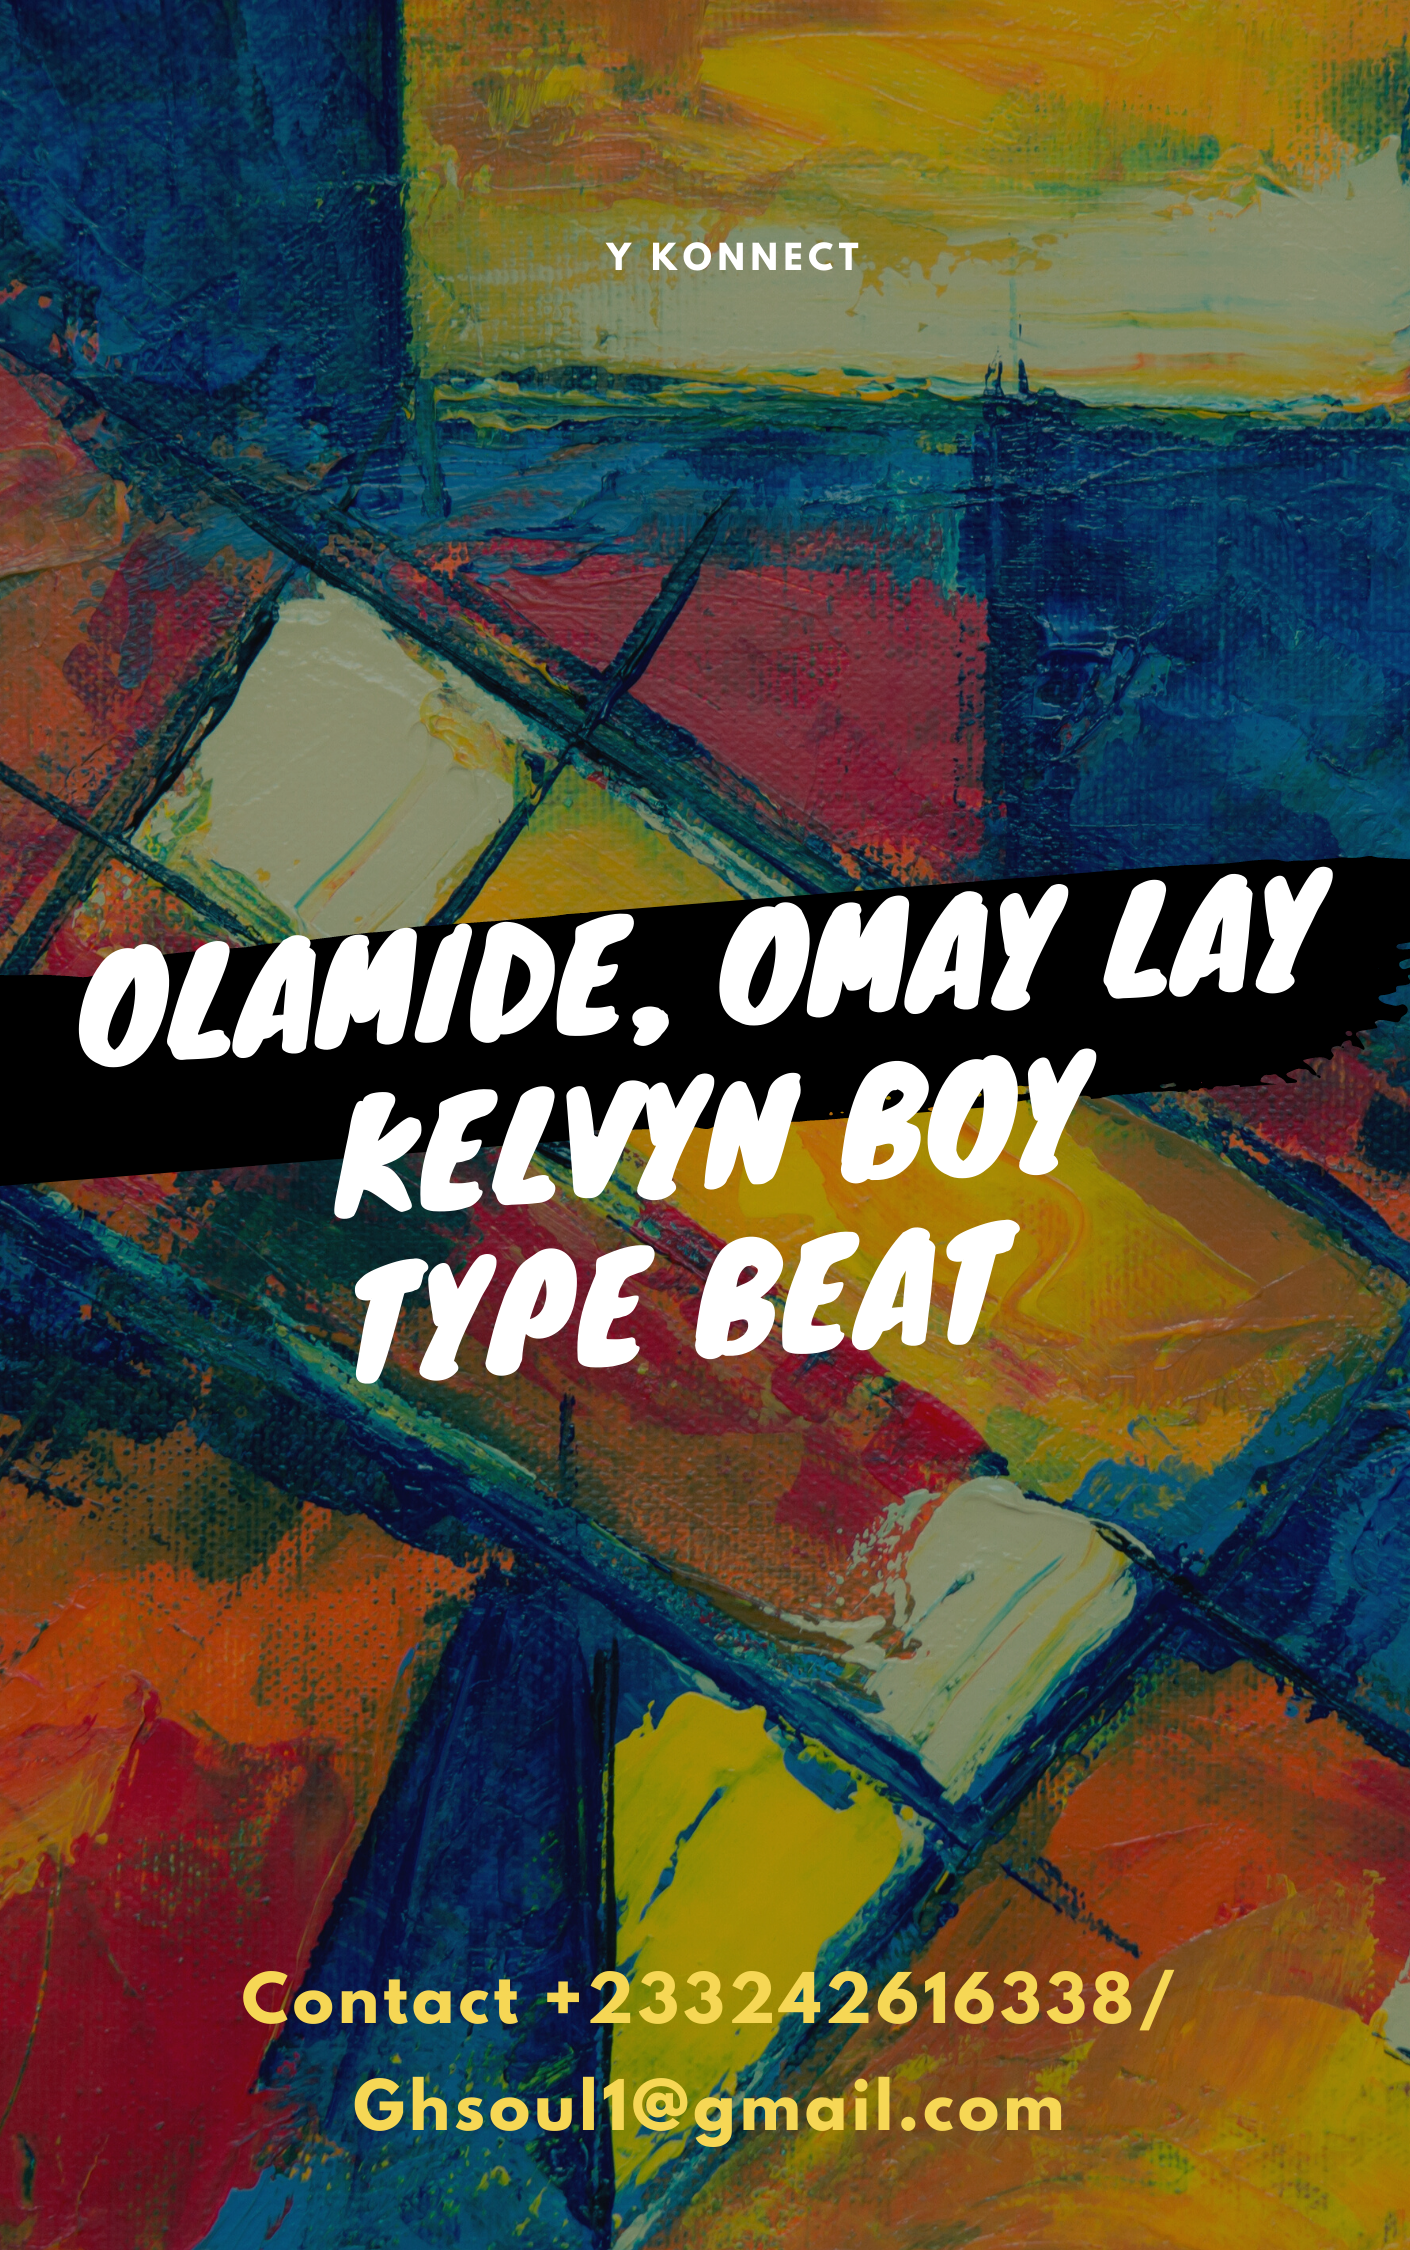 Y Konnect - Olamide x Omay Lay x Kelvyn Boy Type Beat